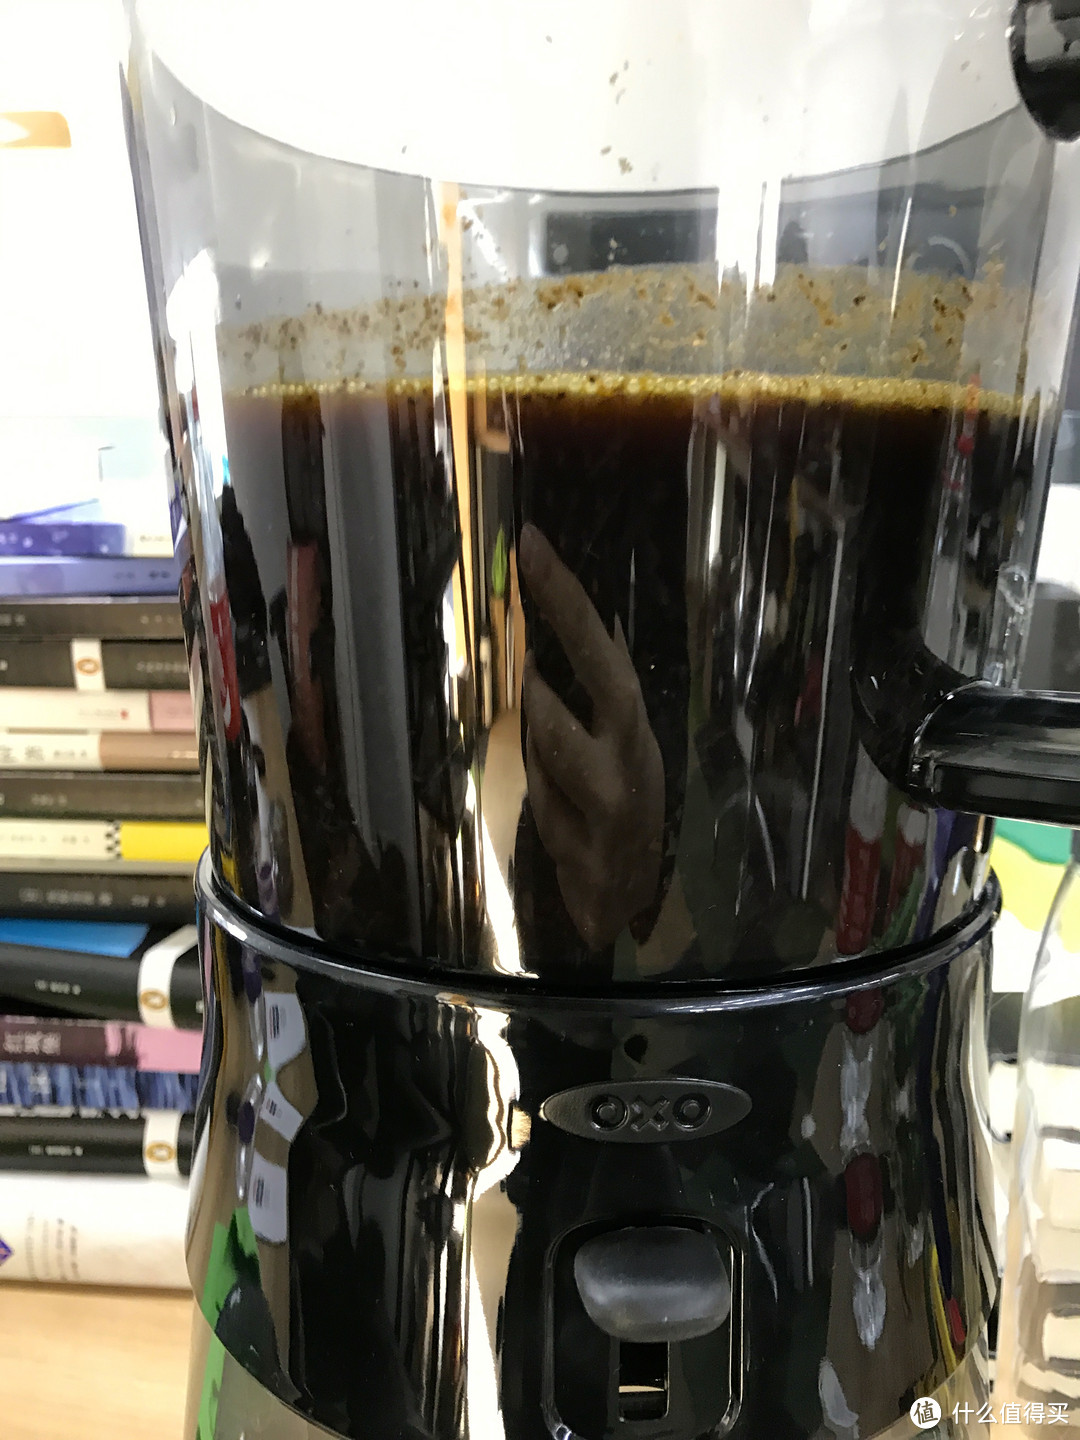 凝结时间的味道 OXO冷萃咖啡设备体验